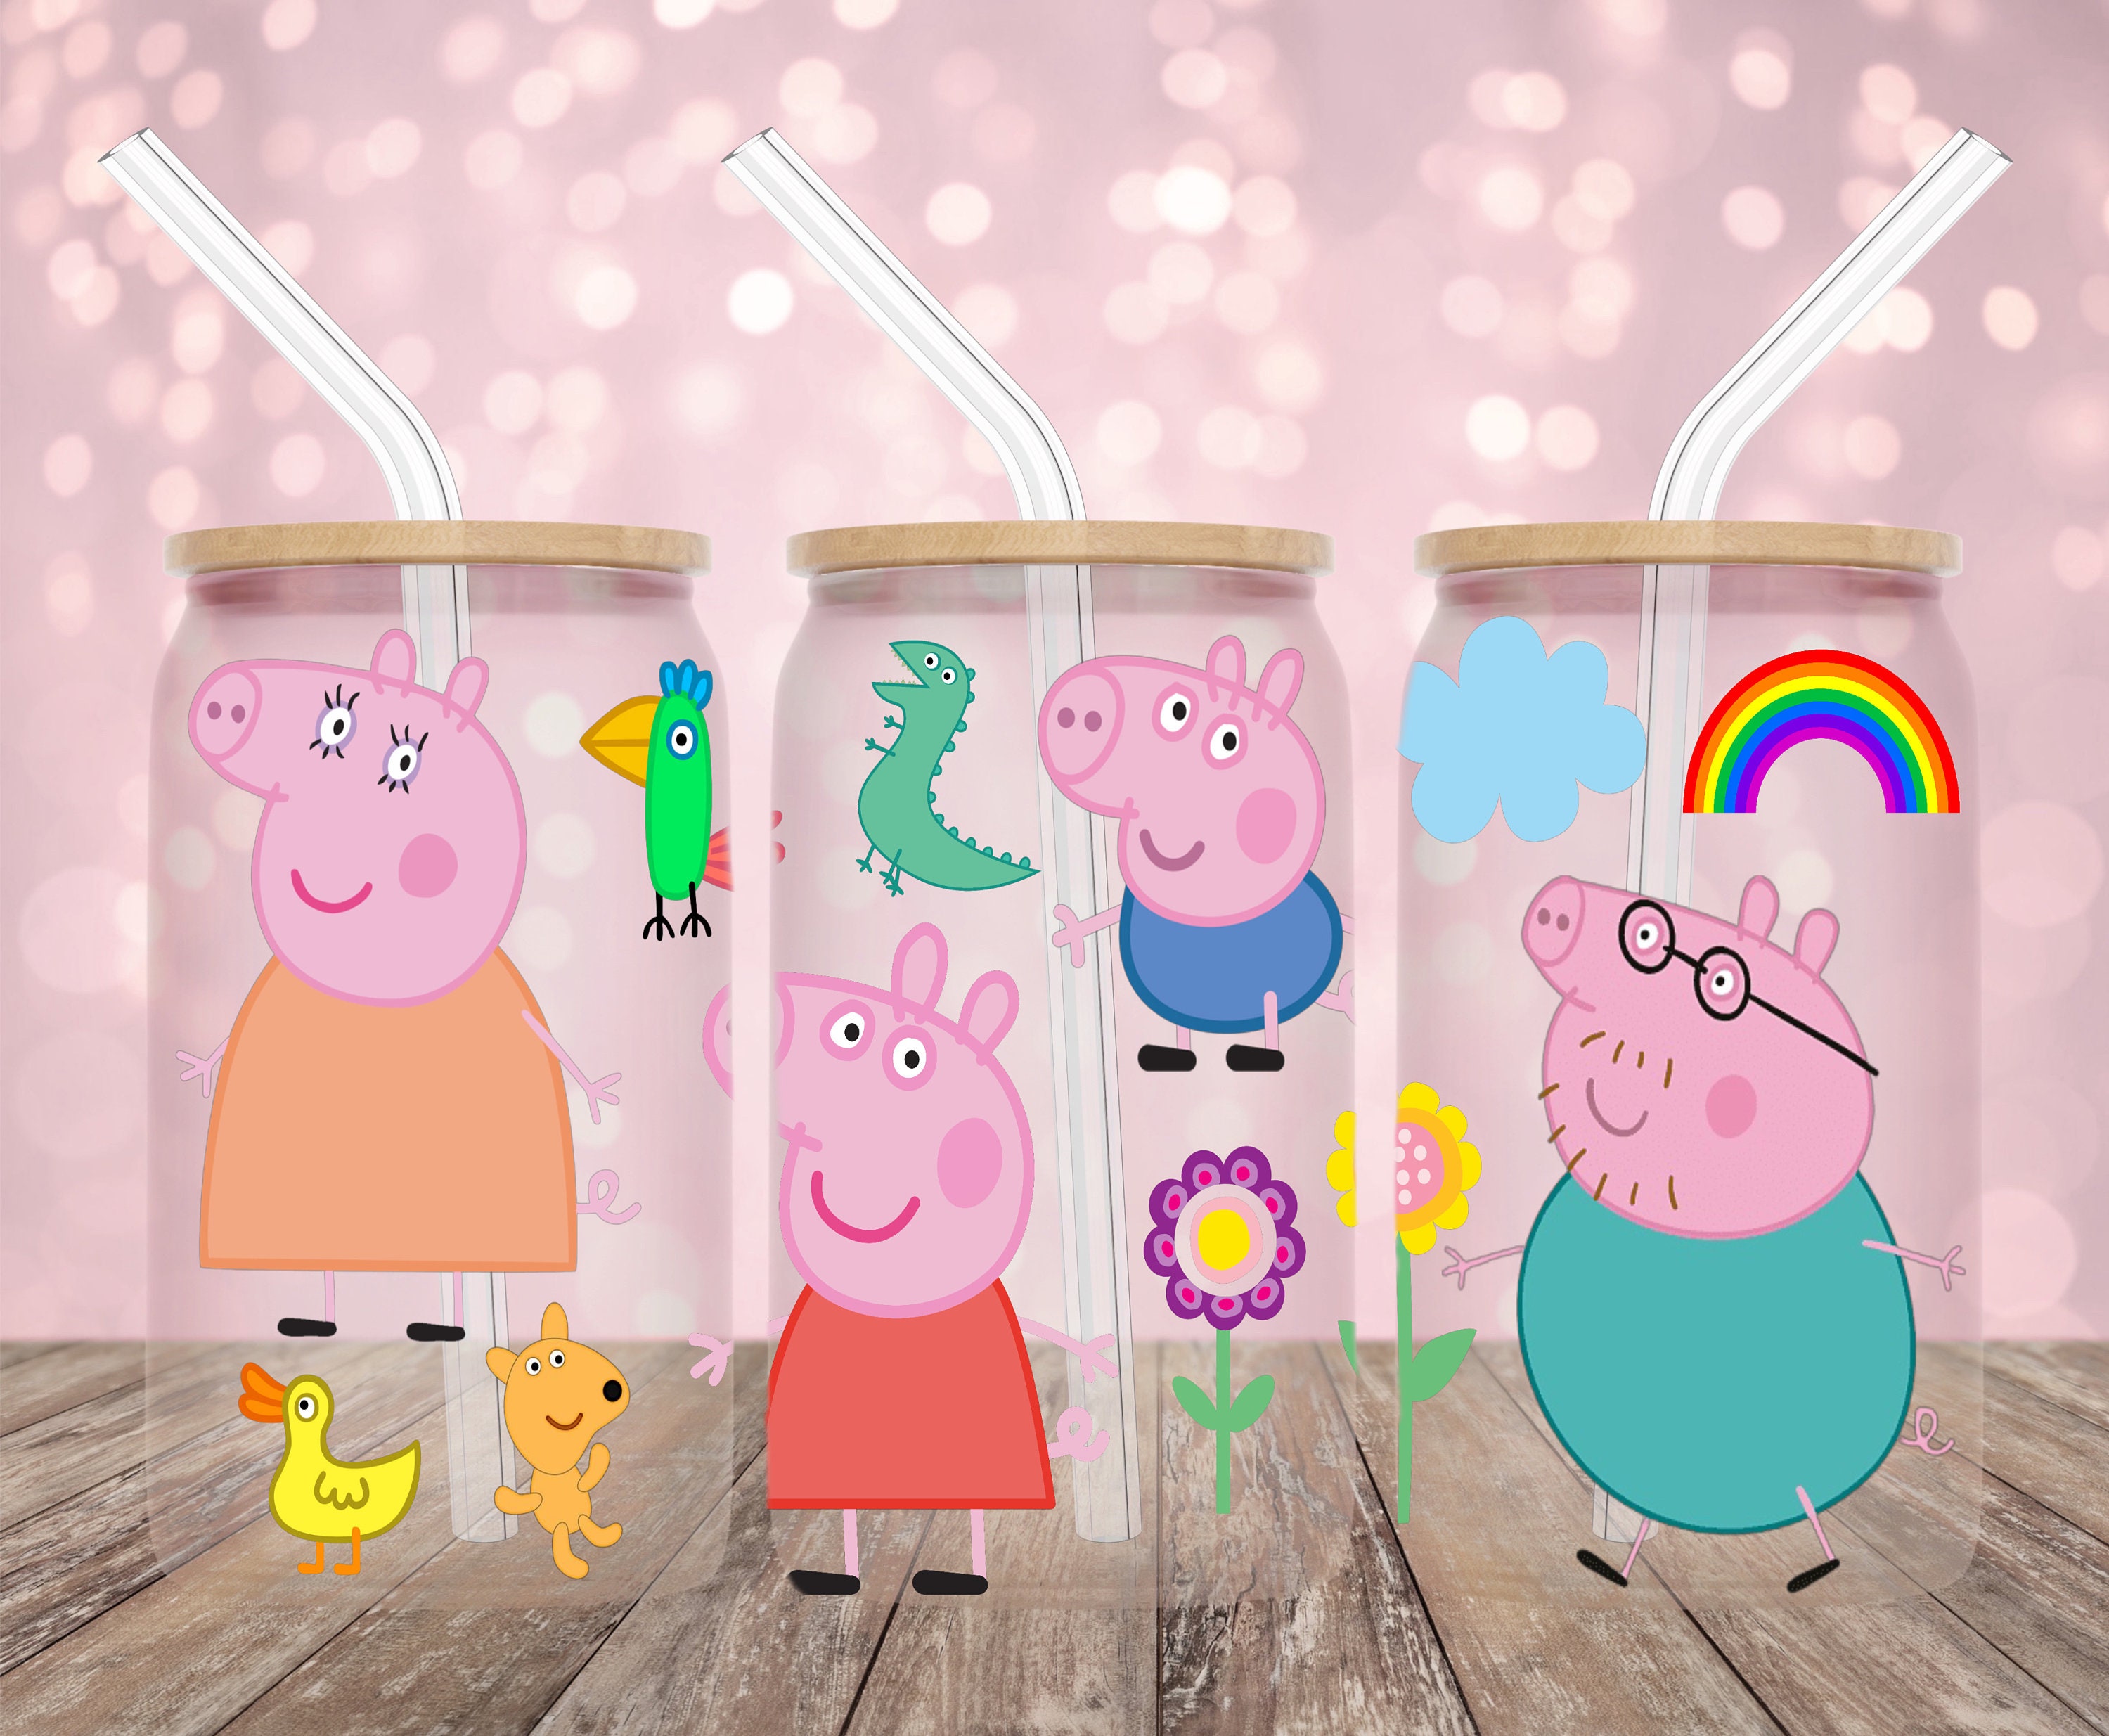 12oz Sippy Kid Cup, Peppa Pig kid cup, vaso de pepa pig, Peppa Pig